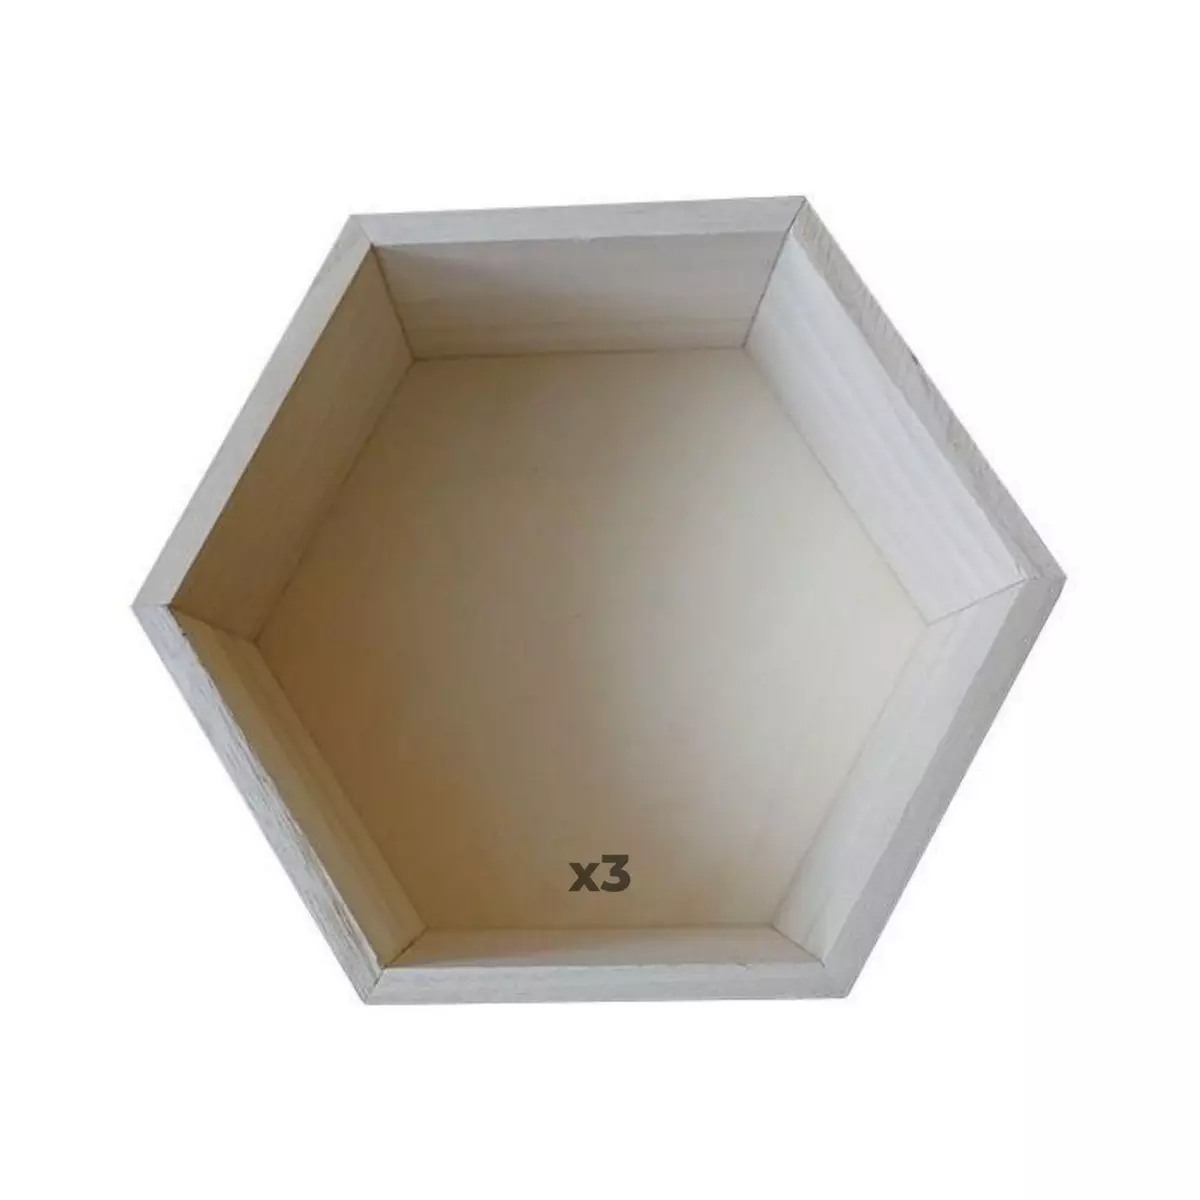 Graine créative 3 étagères hexagonales en bois 30 x 26 x 10 cm